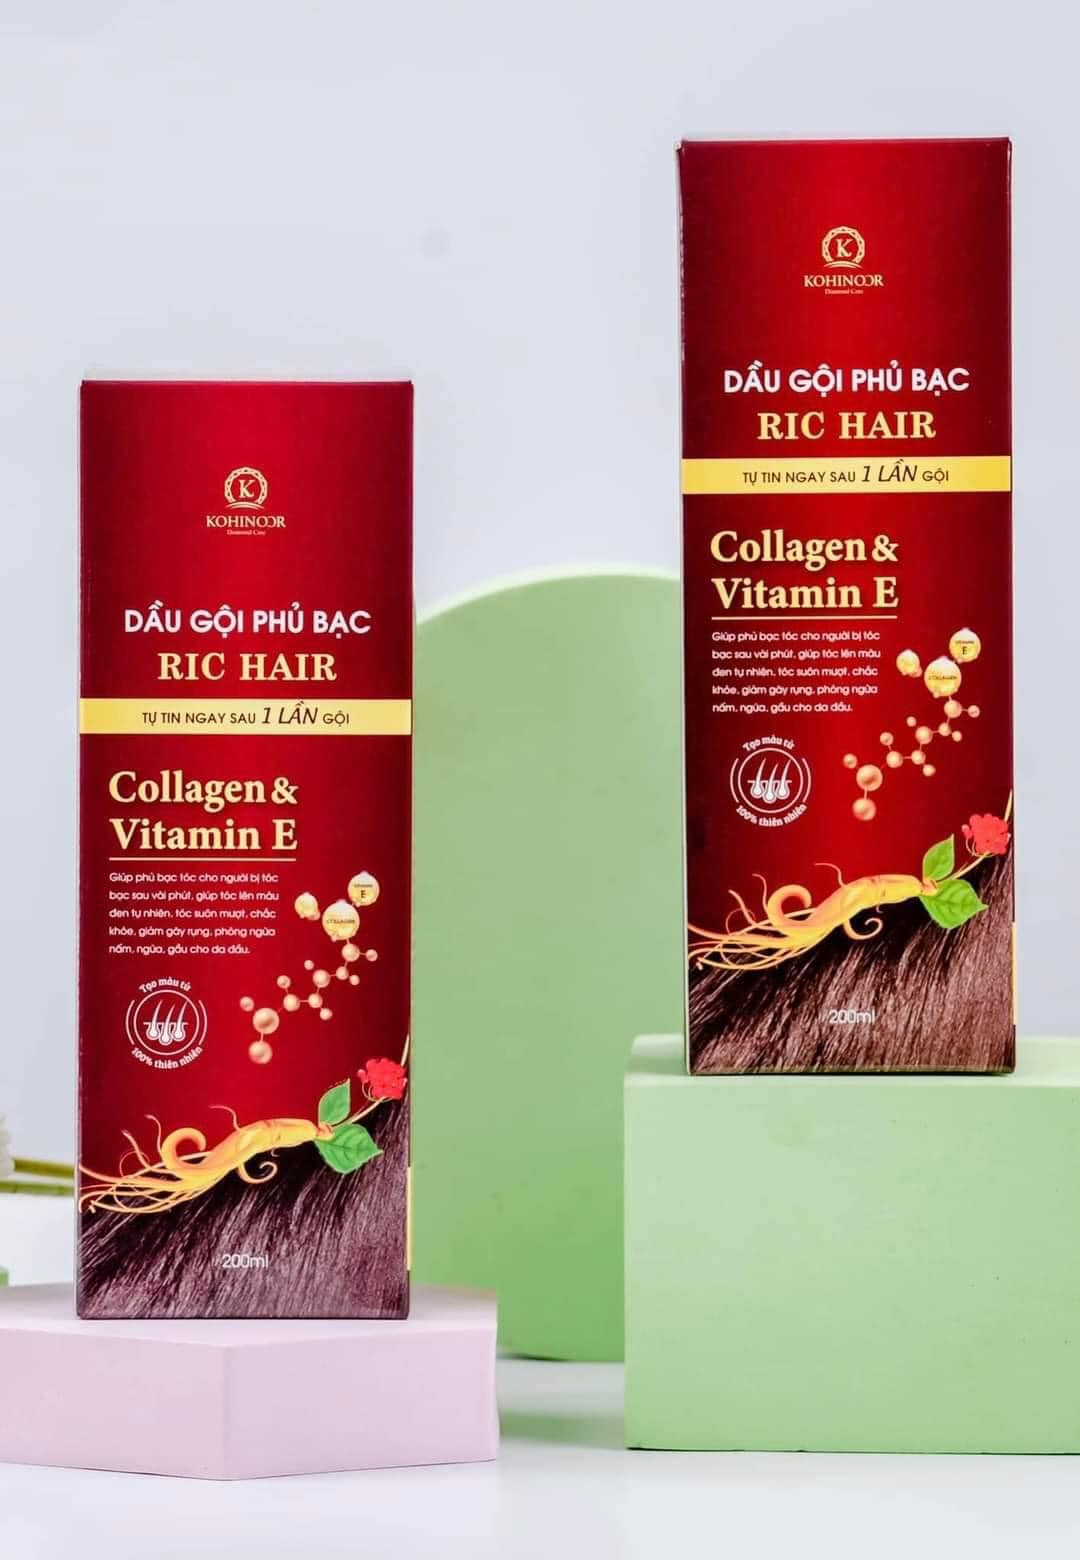 Dầu gội phủ bạc Colagen Vitamin E Ric Hair Kohinor